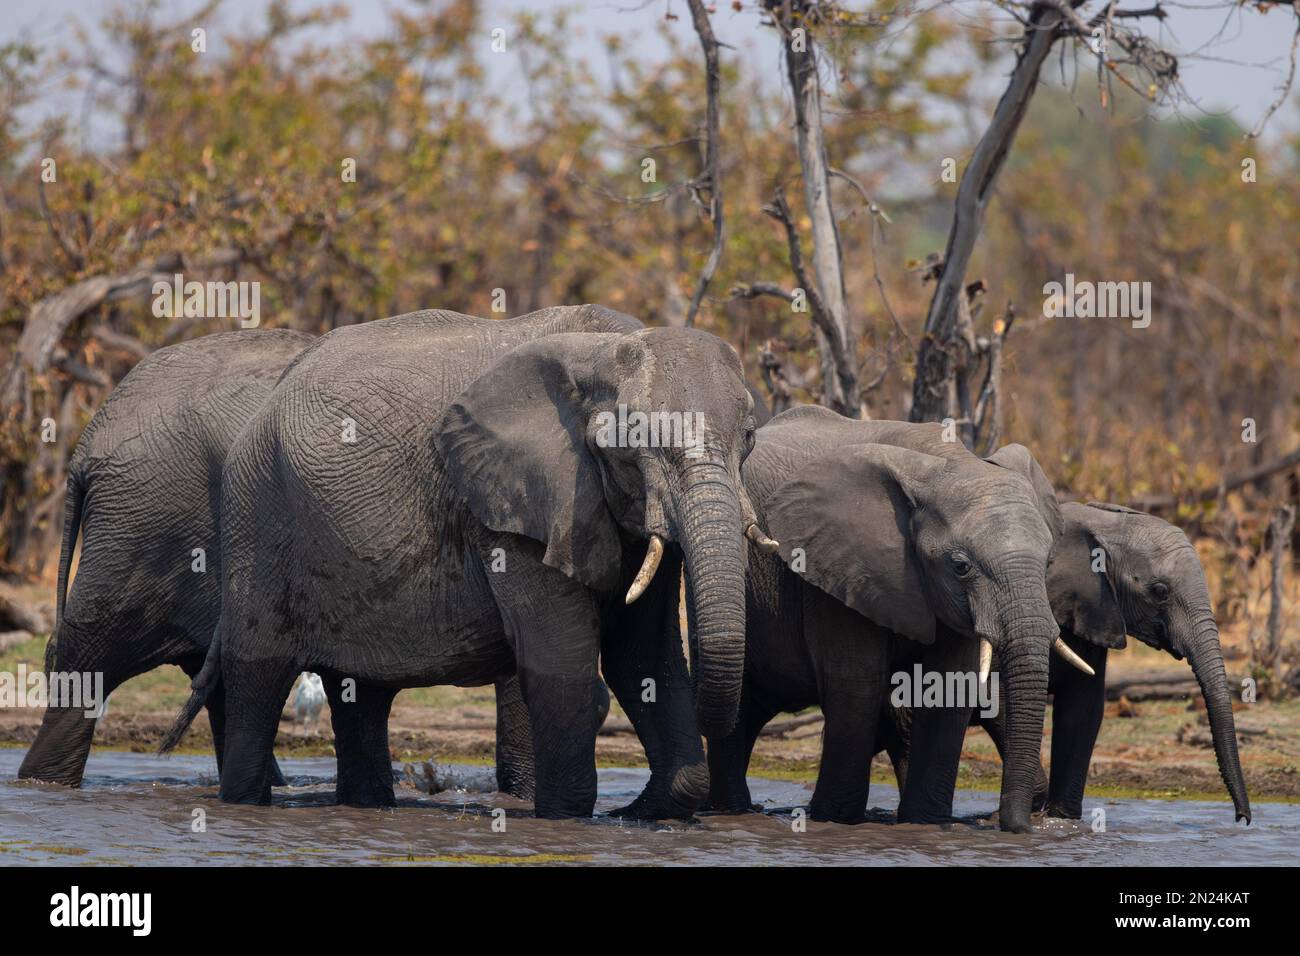 Eine wunderschöne Aufnahme einer Gruppe grauer Elefanten, die im Wasser waten Stockfoto